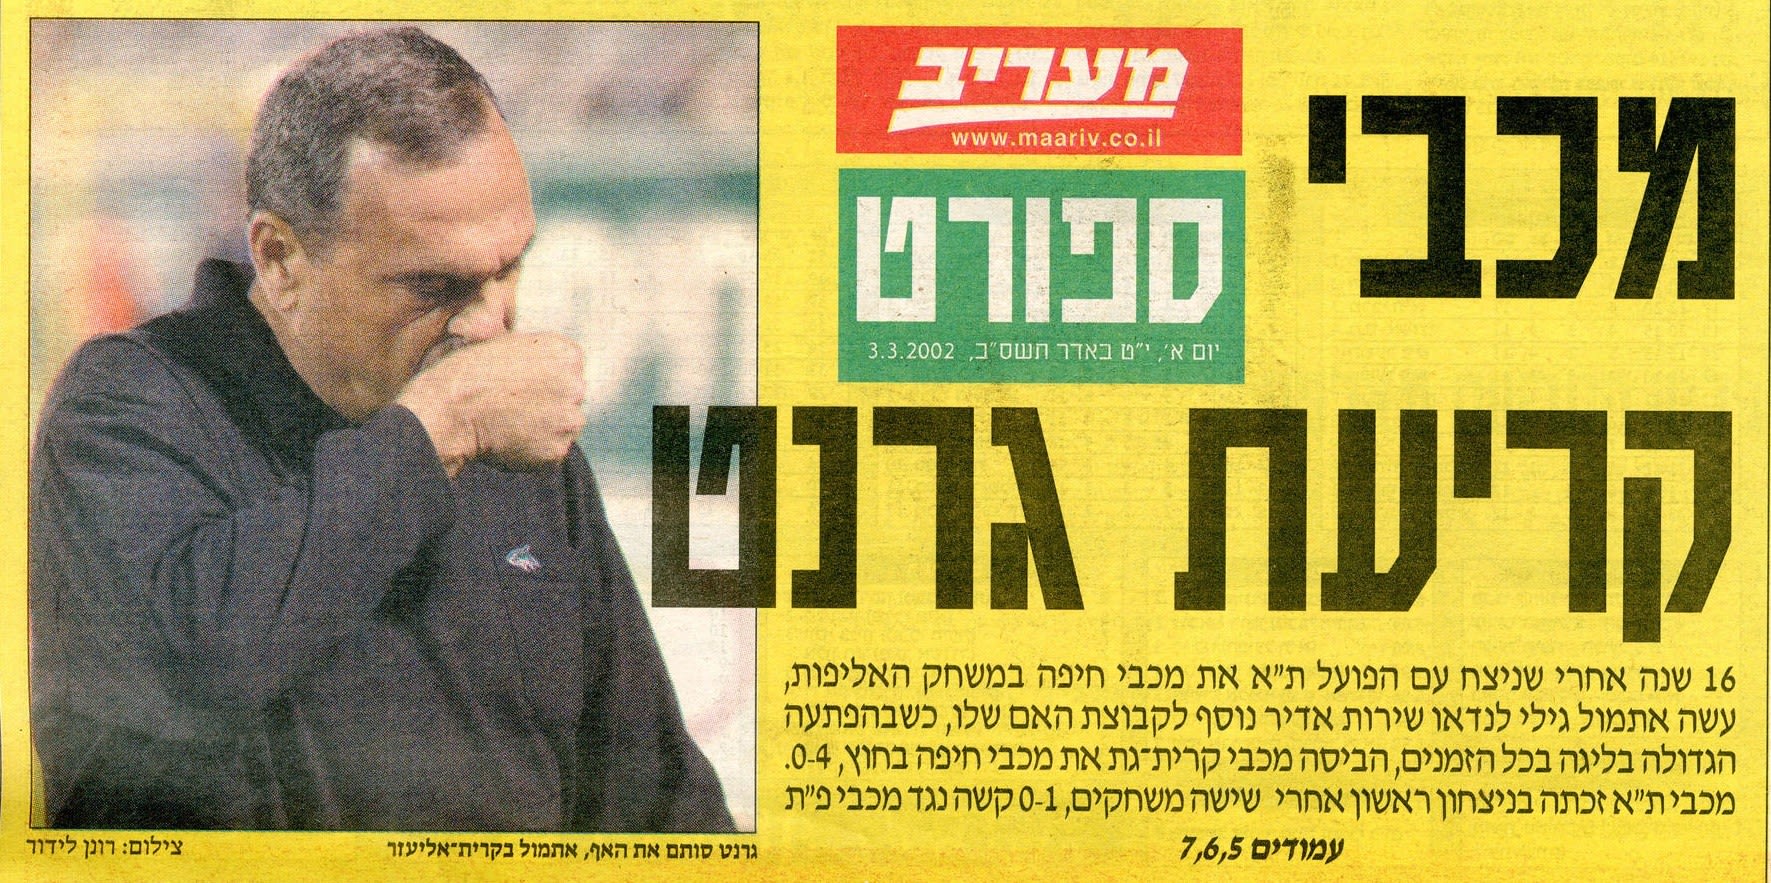 מכבי חיפה - מכבי קרית גת 4:0, כותרת מעריב ספורט, מרץ 2002